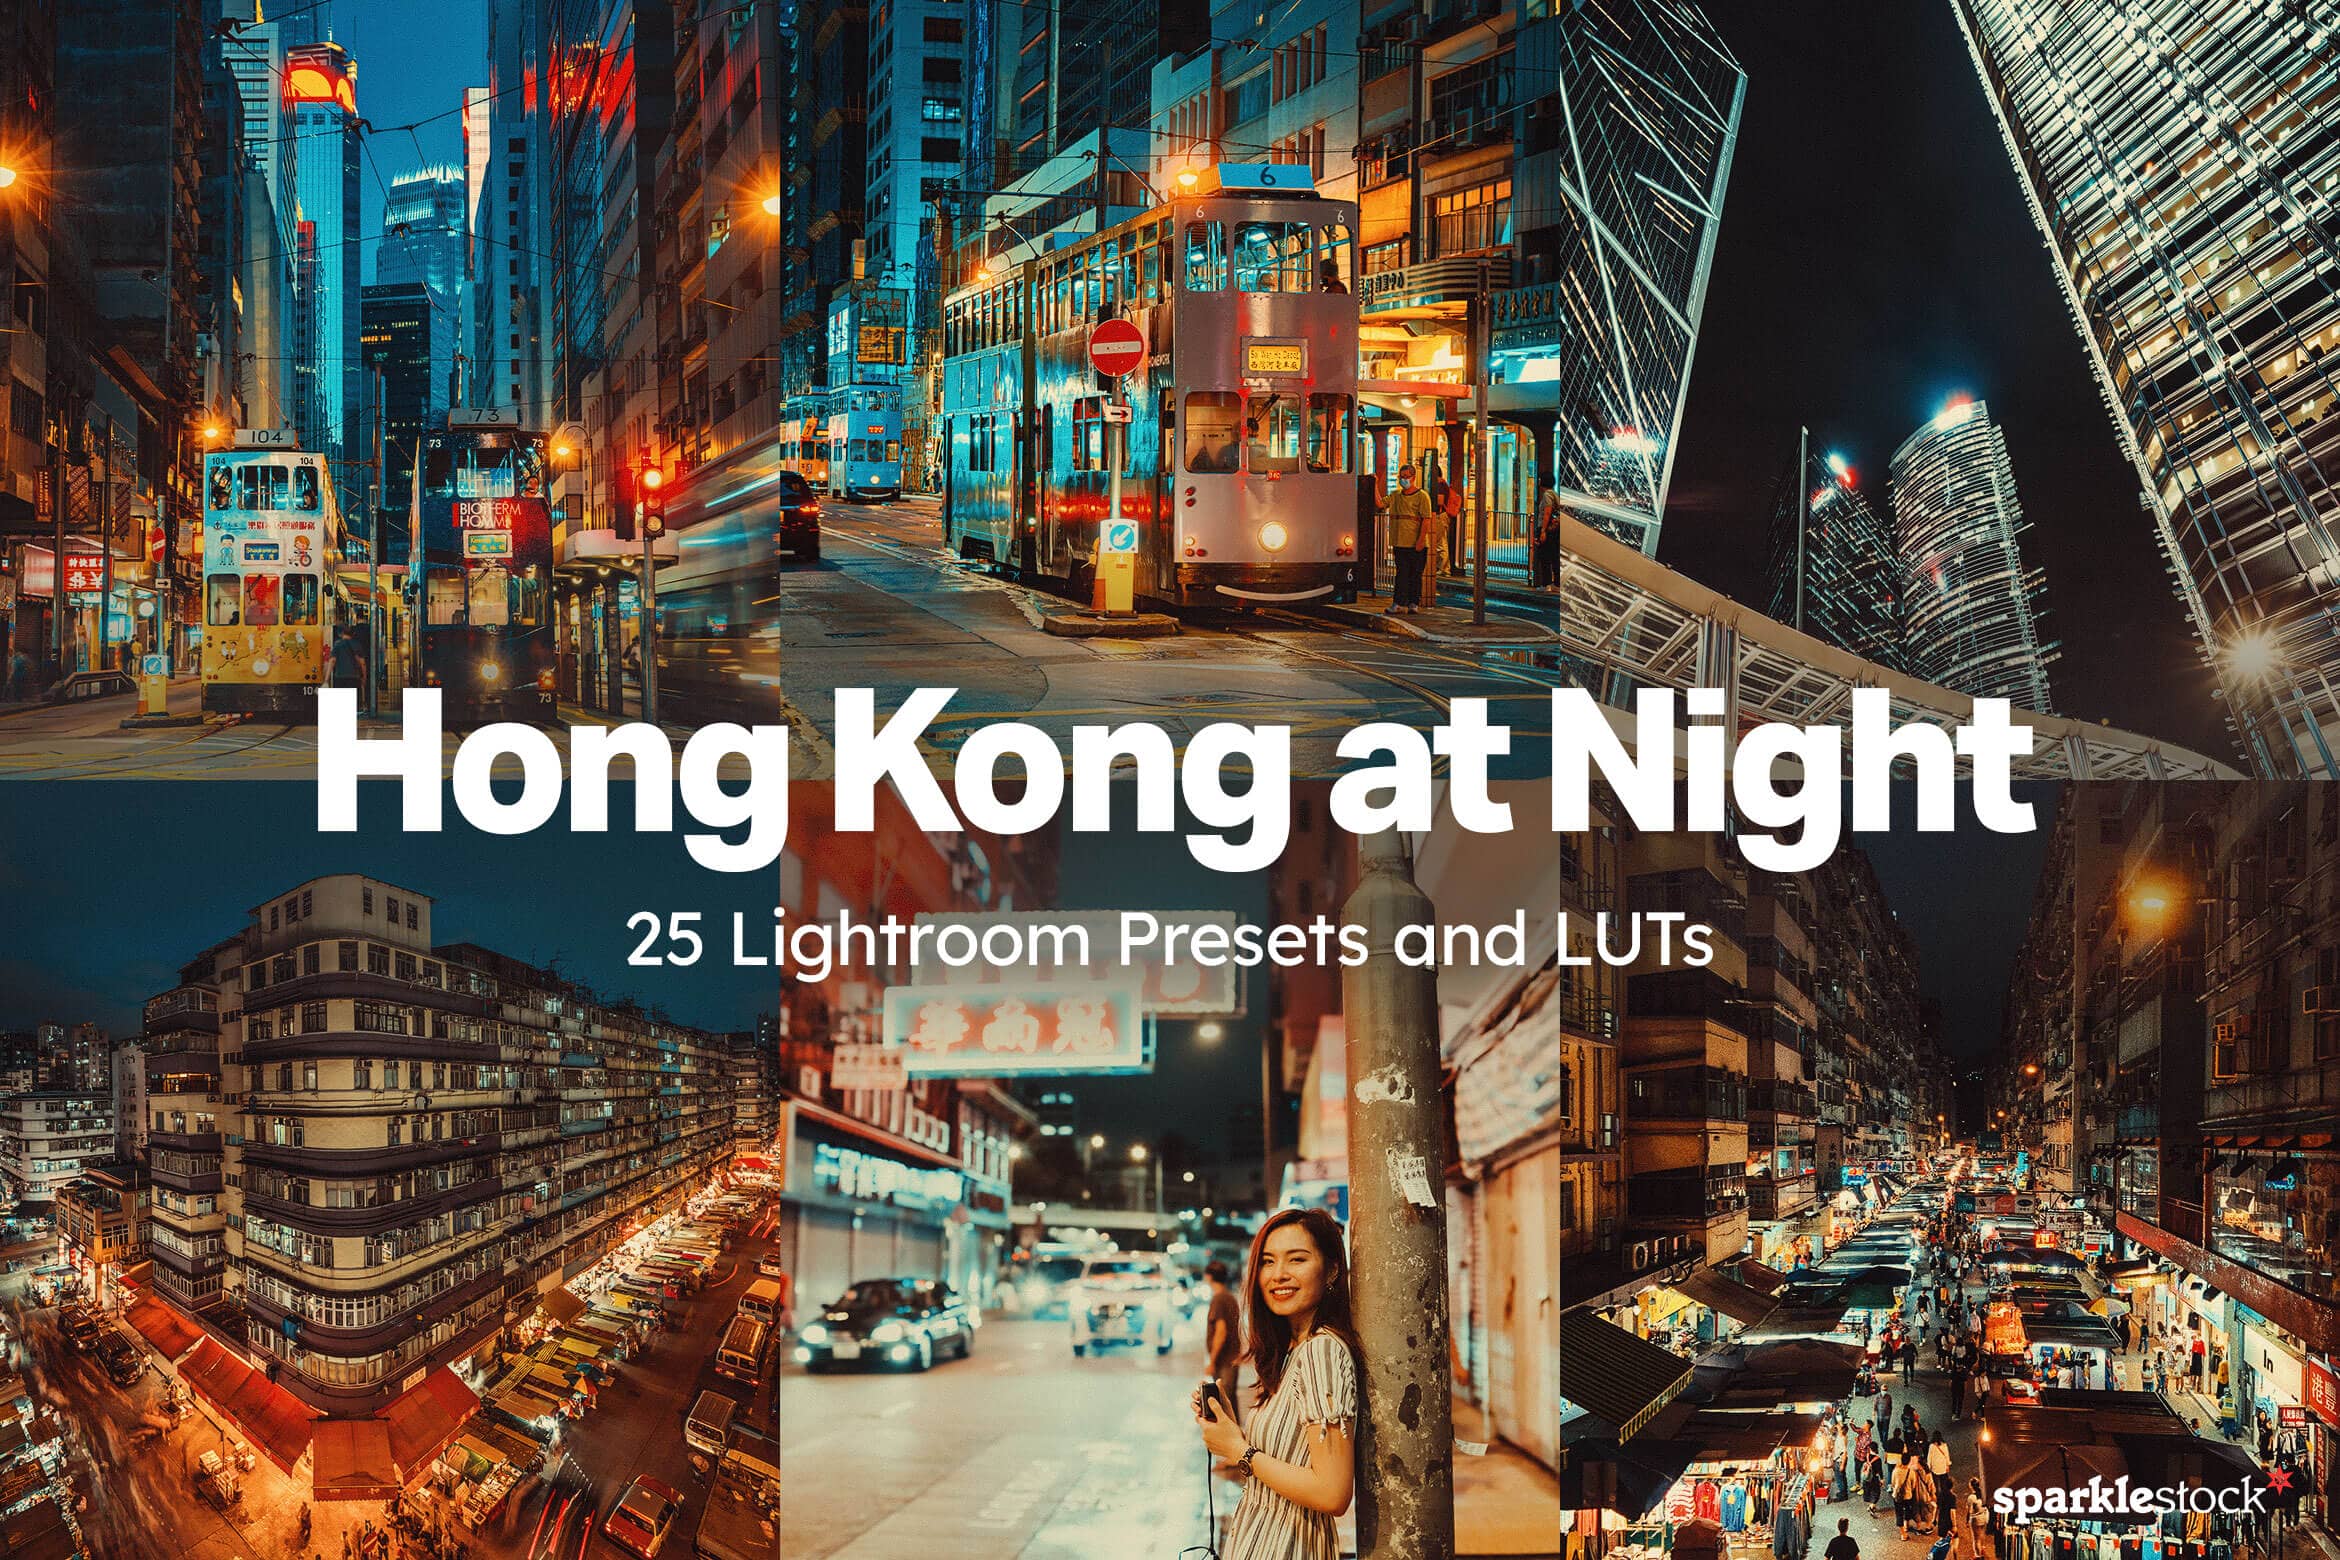 Hong Kong at Night Lightroom Presets and LUTs